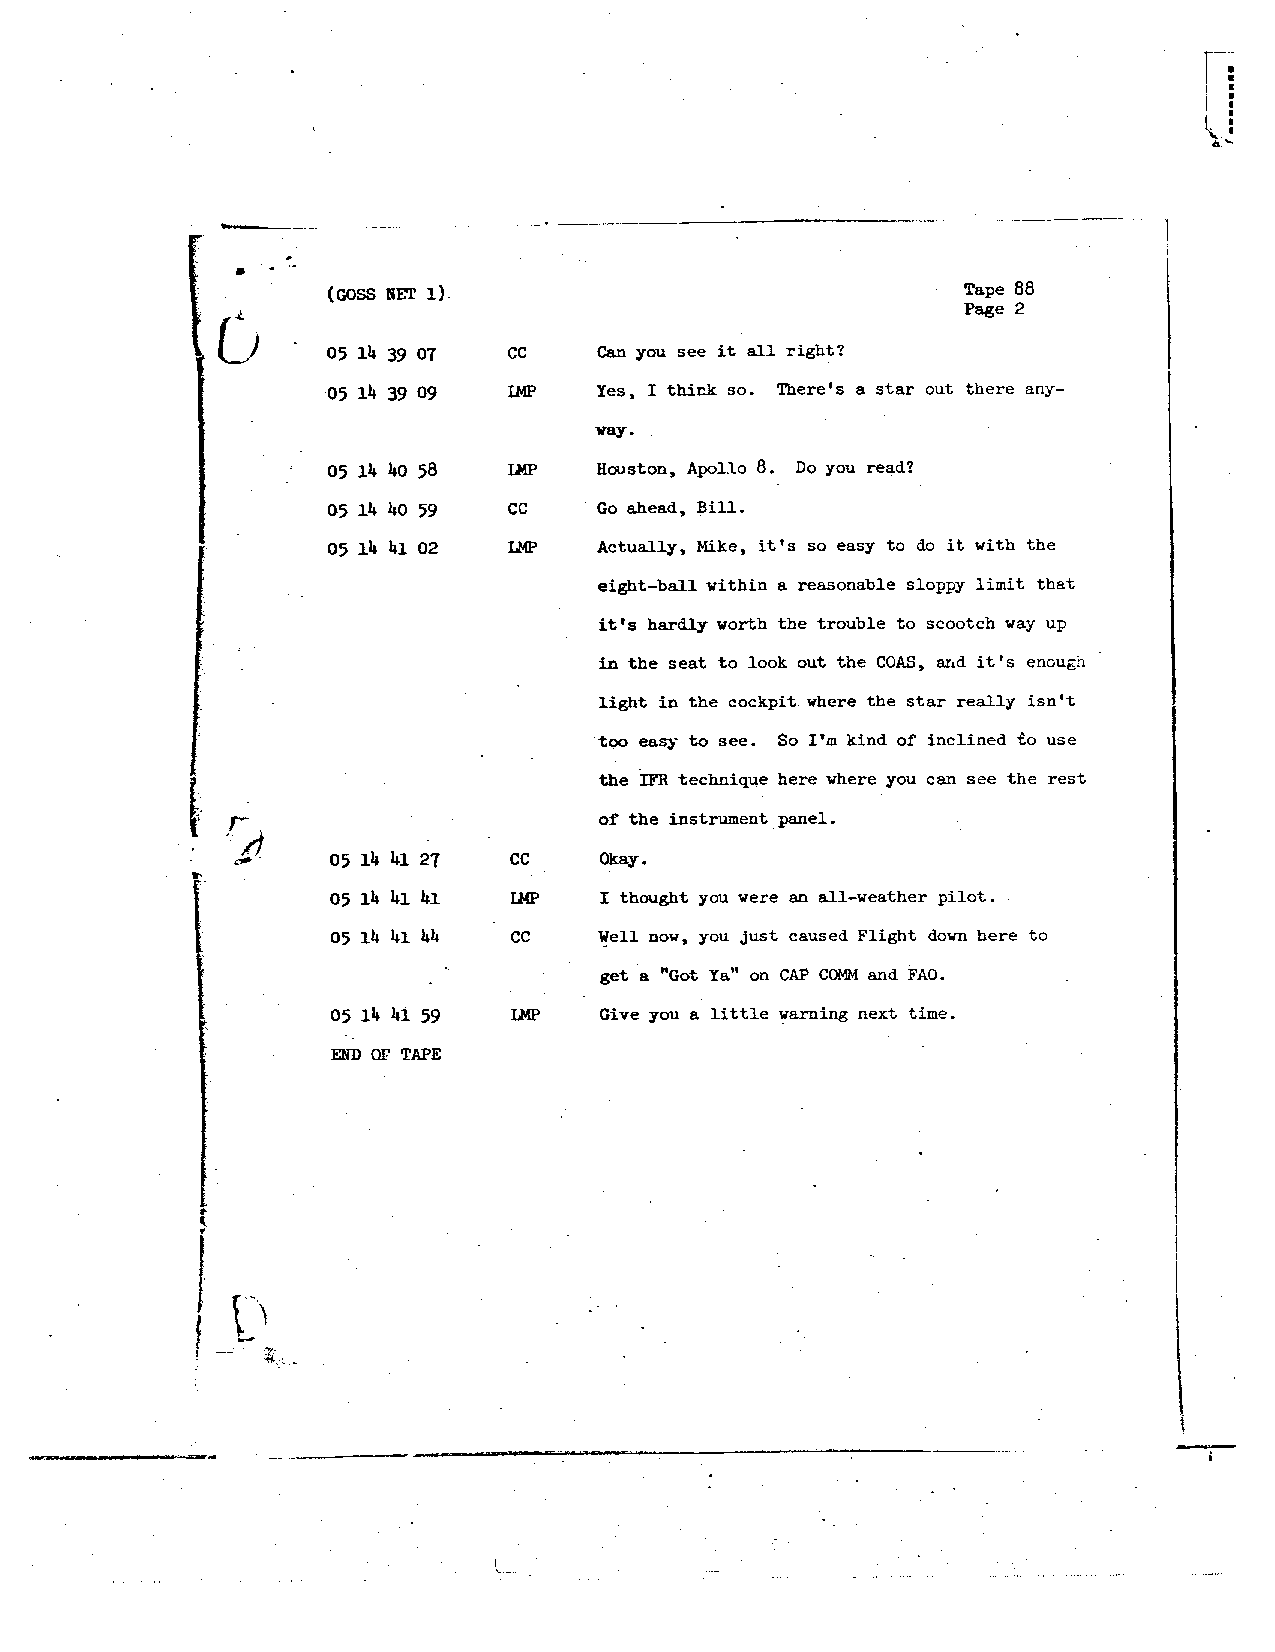 Page 721 of Apollo 8’s original transcript